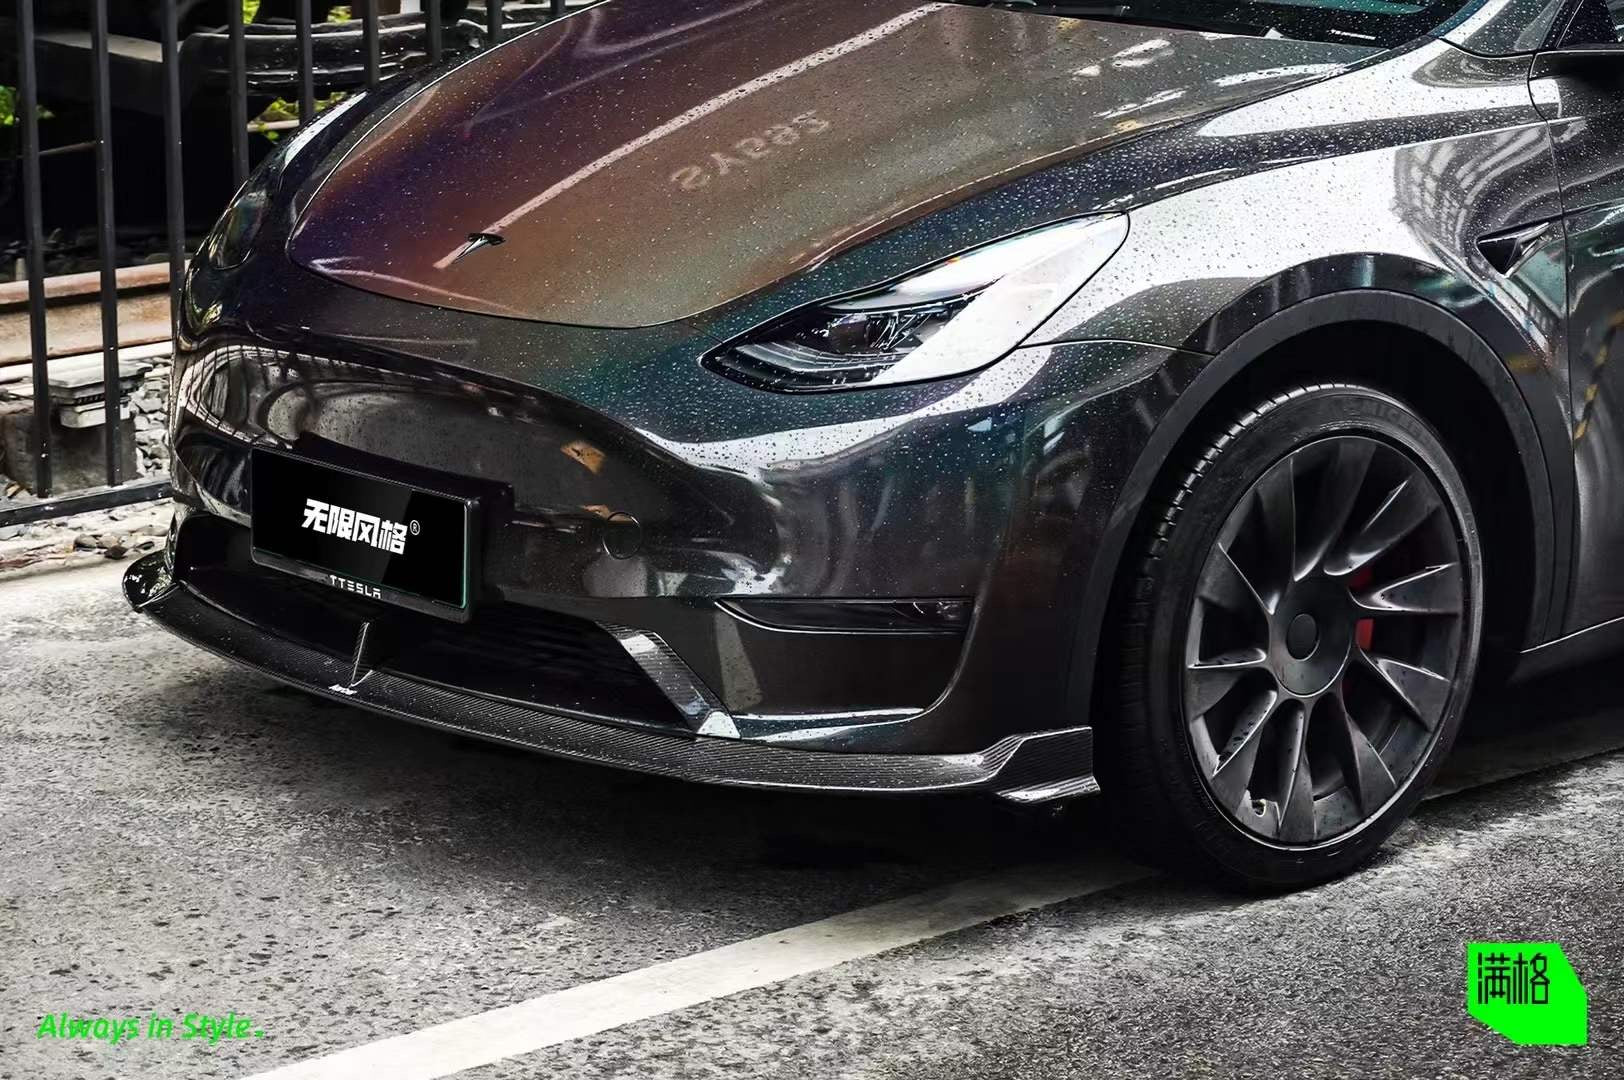 Karbel Carbon Pre-preg Carbon Fiber Front Lip Splitter for Tesla Model Y / Performance